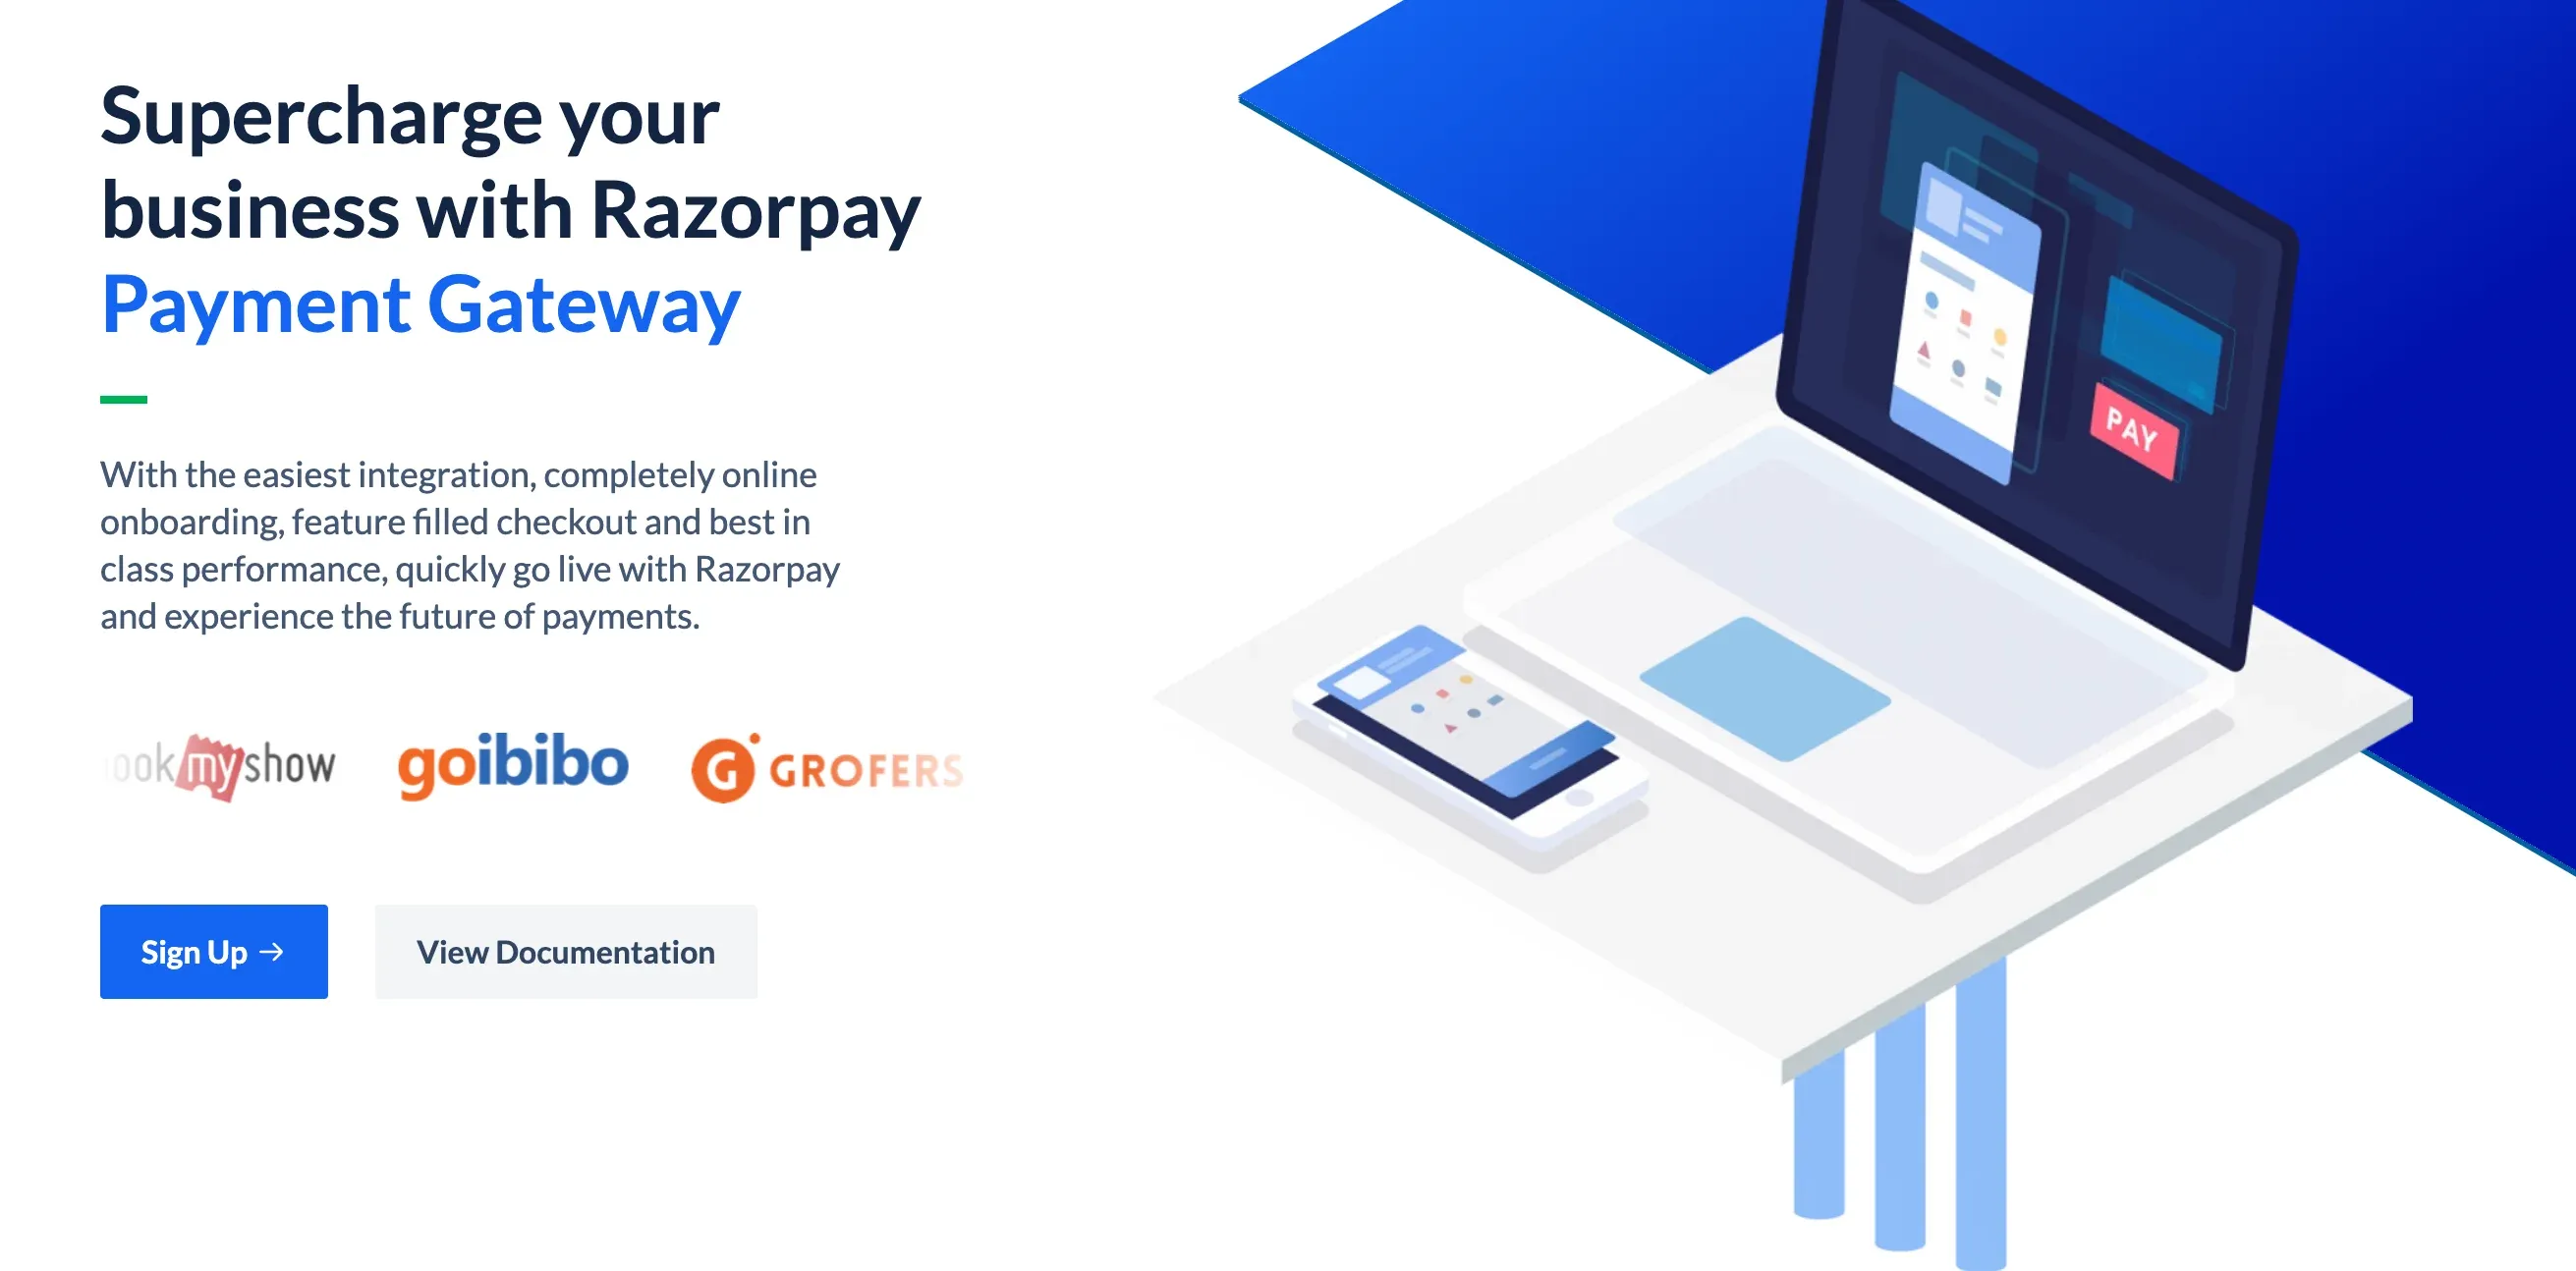 Setting up payment gateway using razorpay